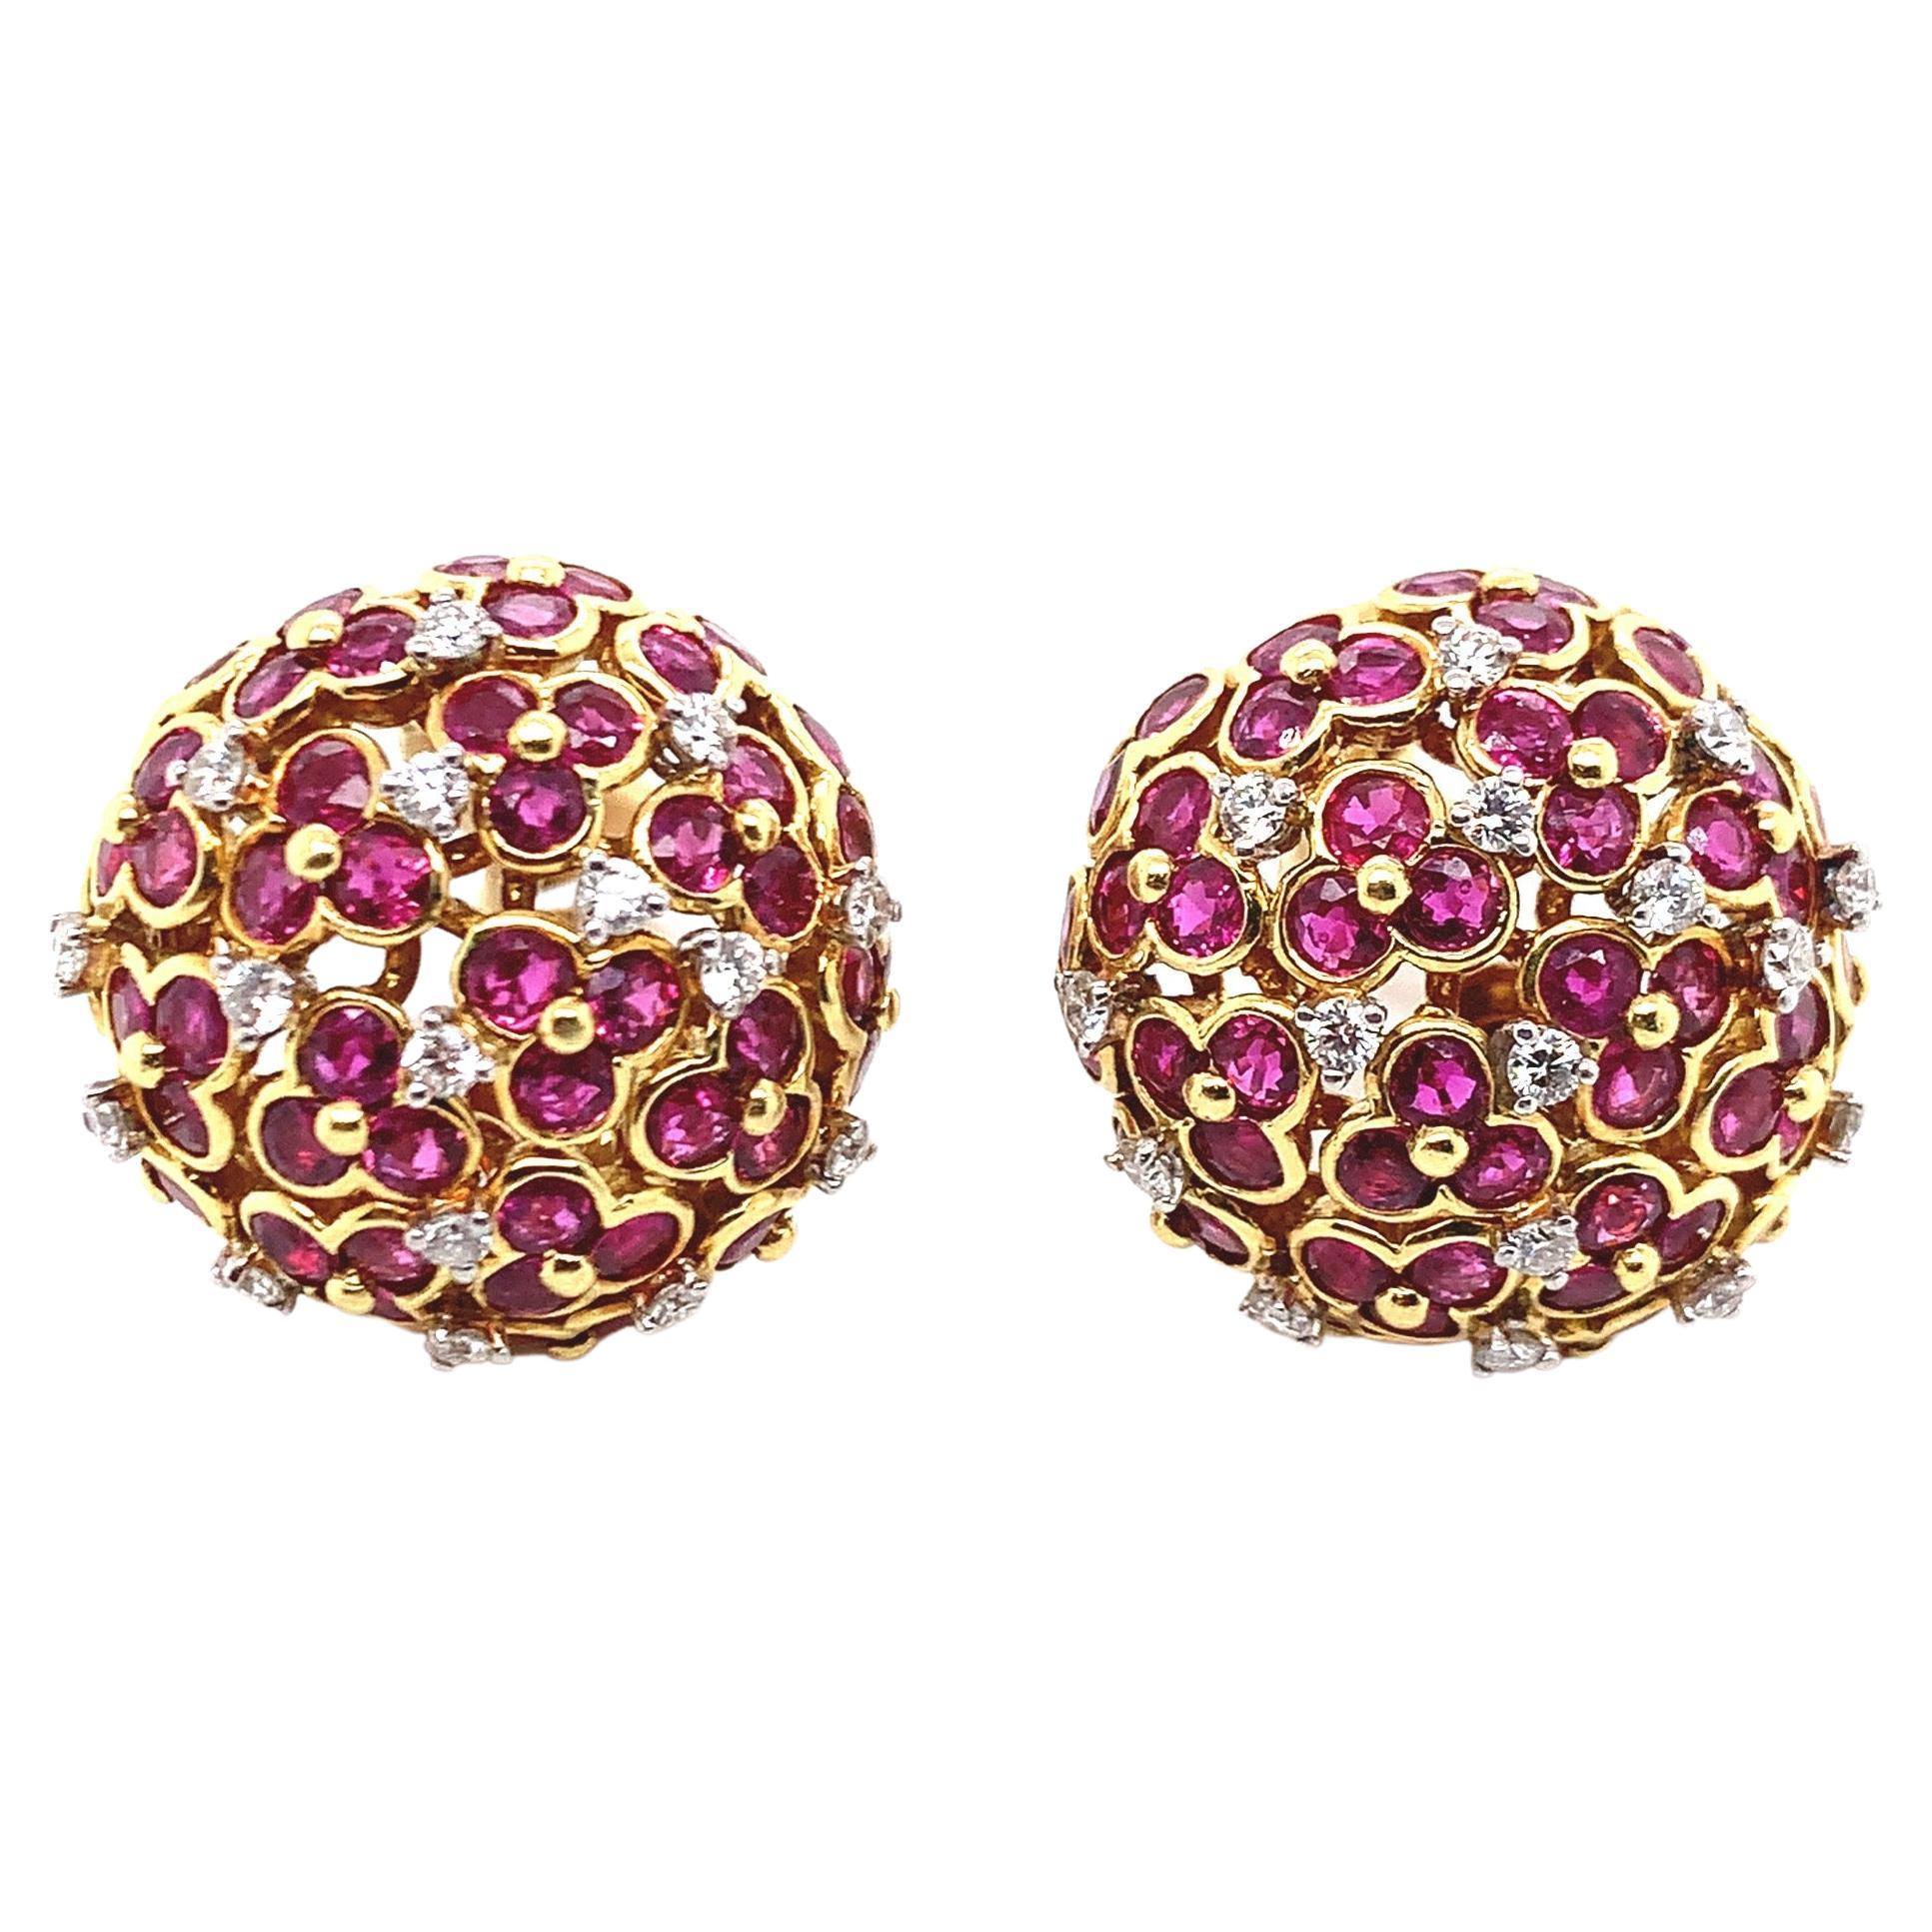 Jean Vitau 18k Yellow Gold Ruby & Diamond Earrings For Sale